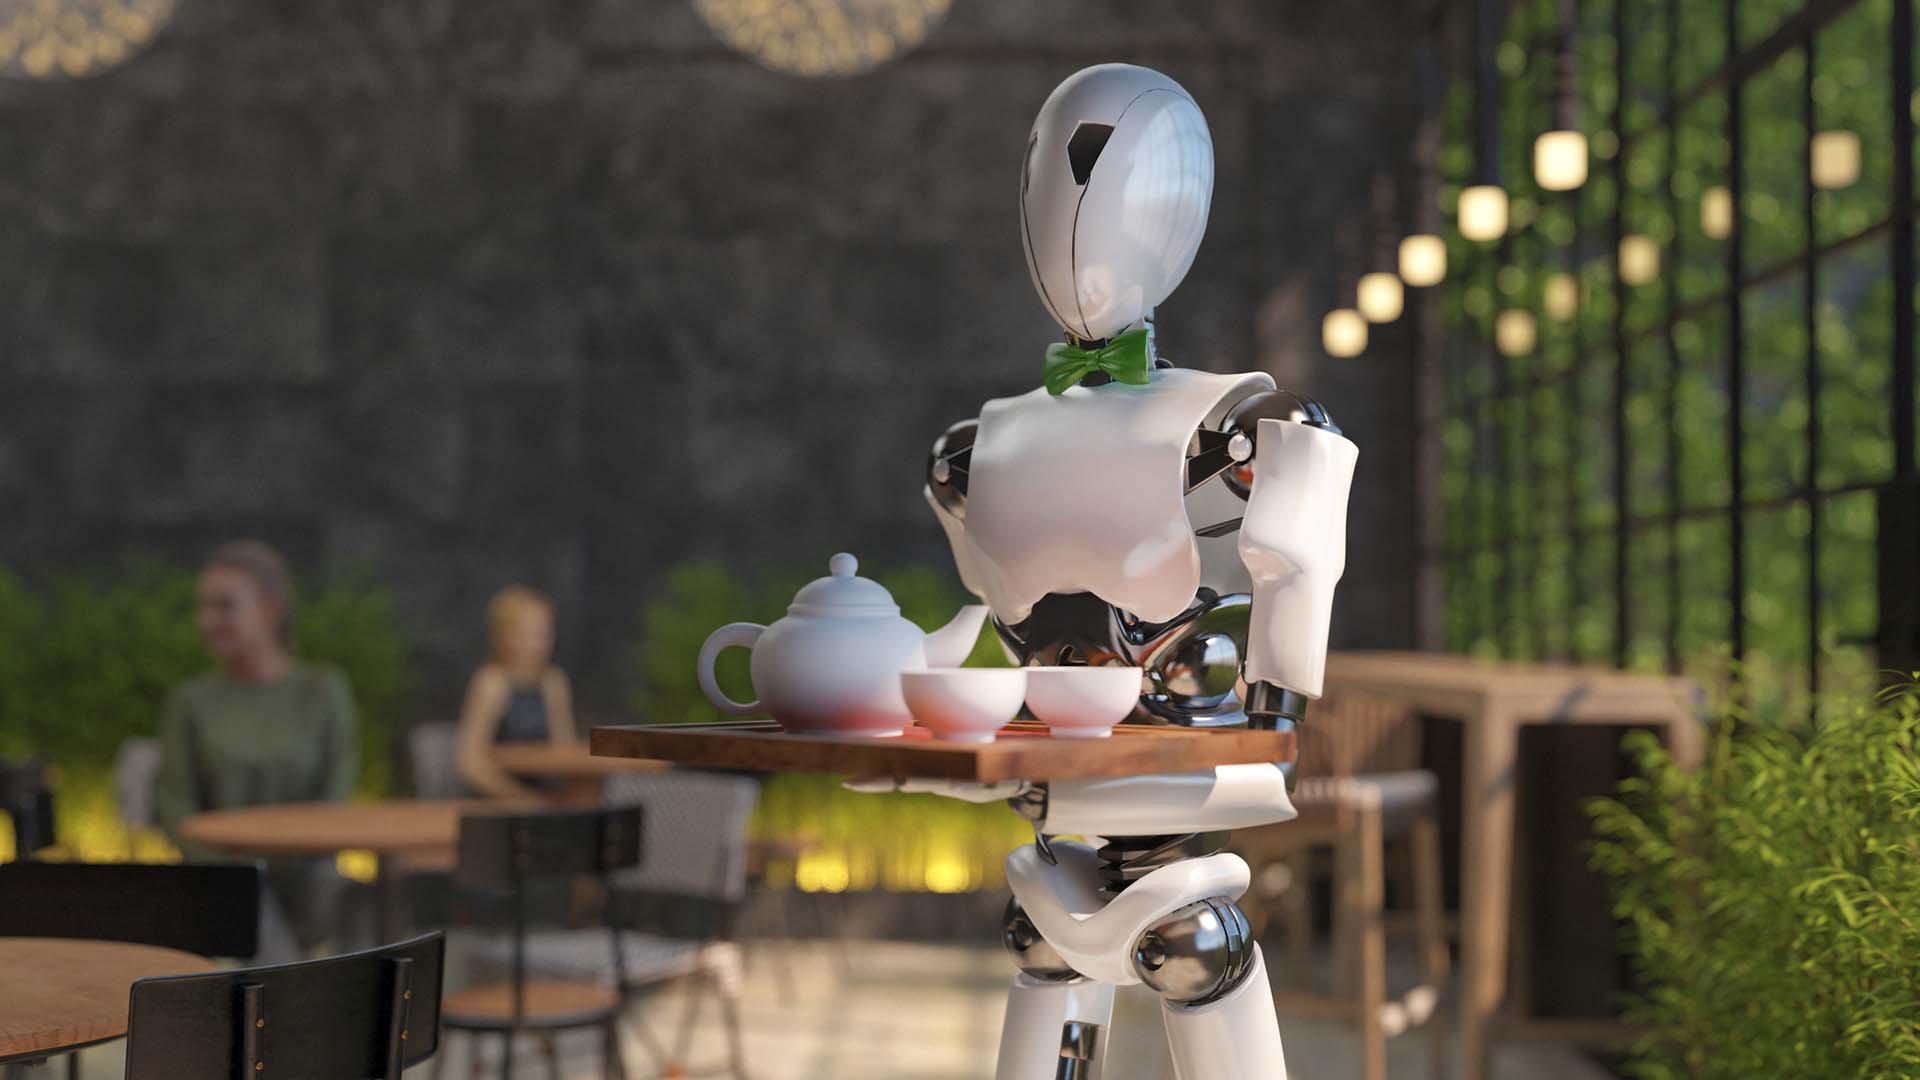 A robot carries a tea set